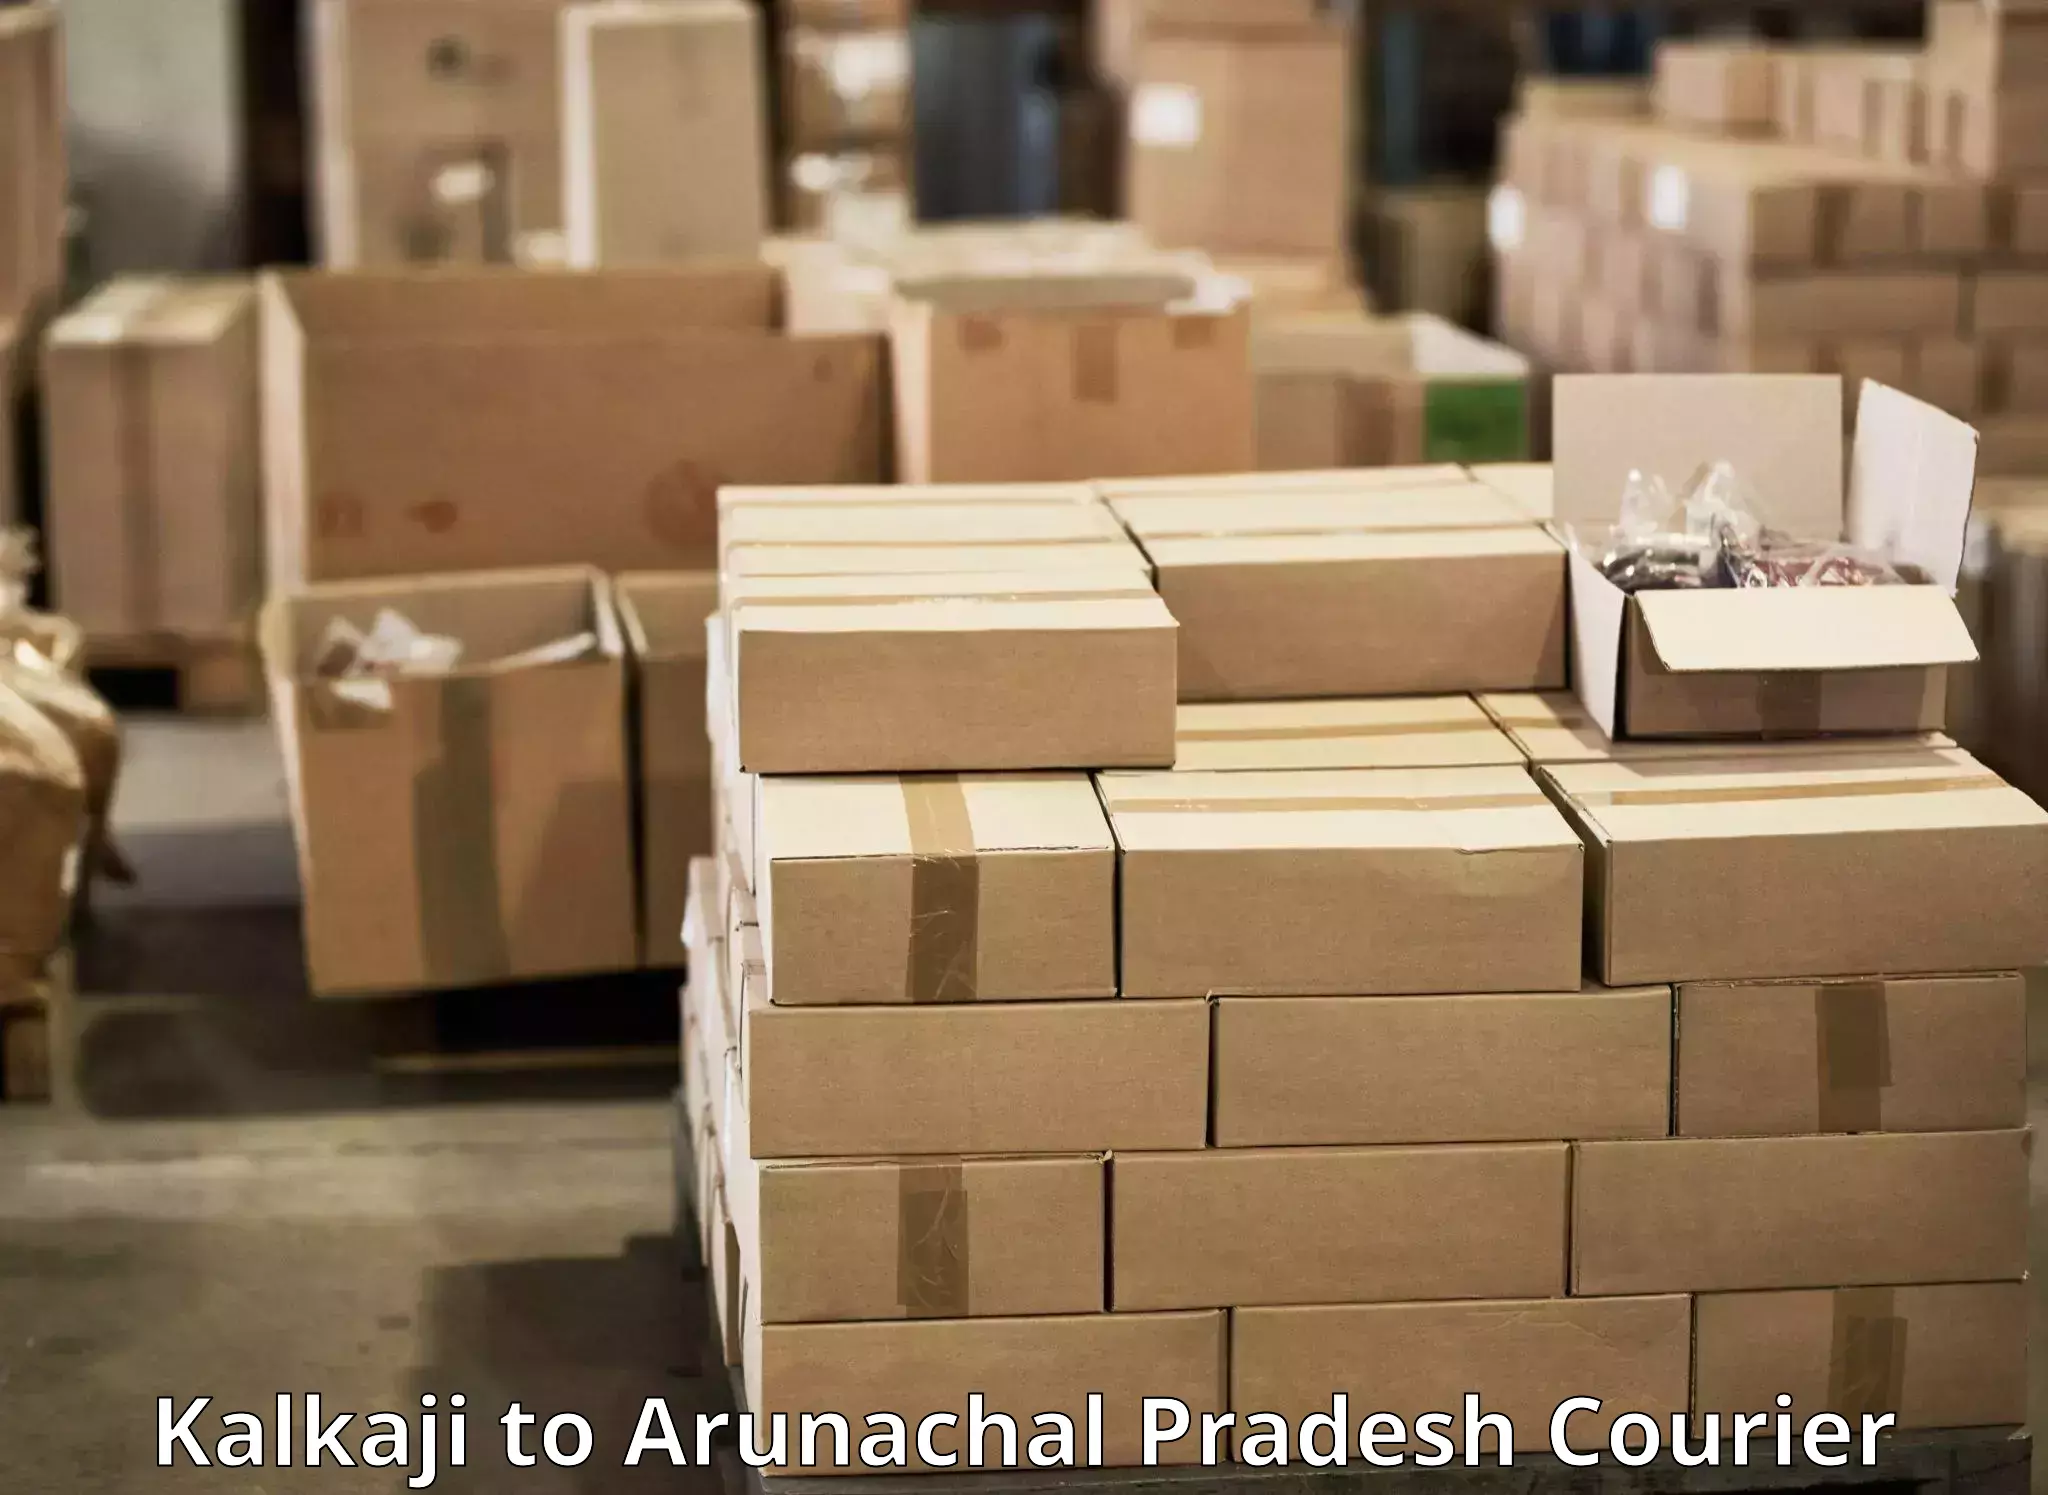 Premium courier services Kalkaji to Aalo